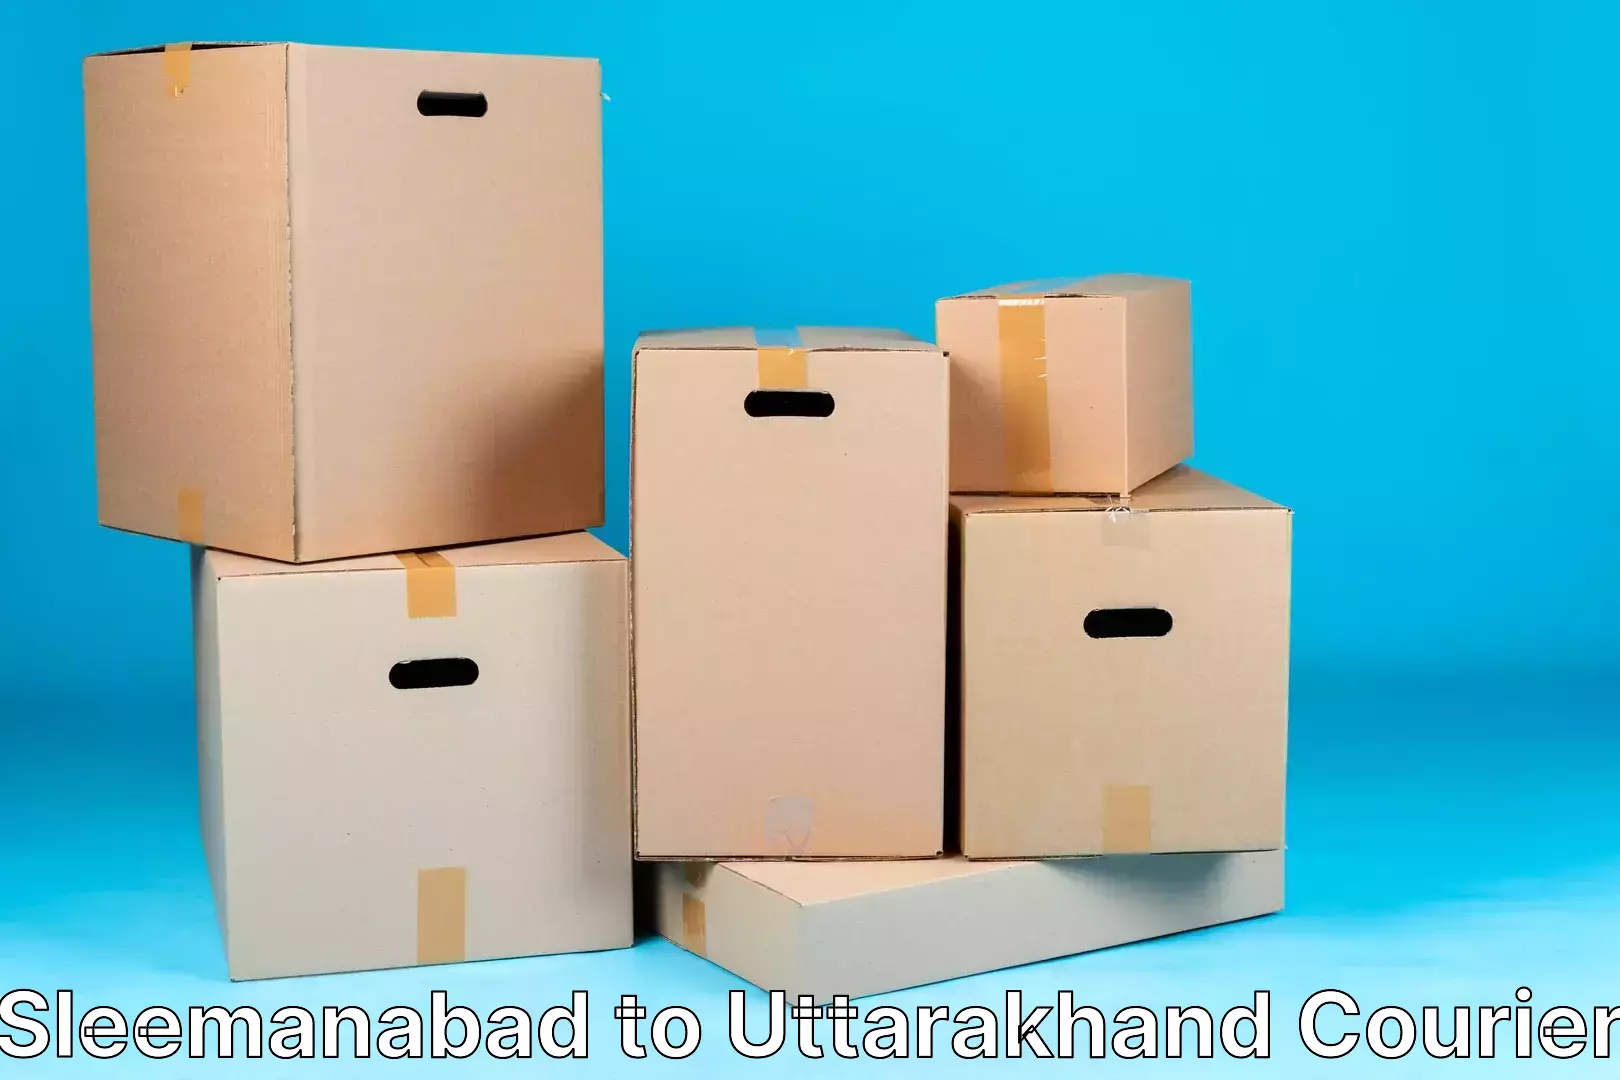 Luggage delivery network Sleemanabad to Uttarakhand